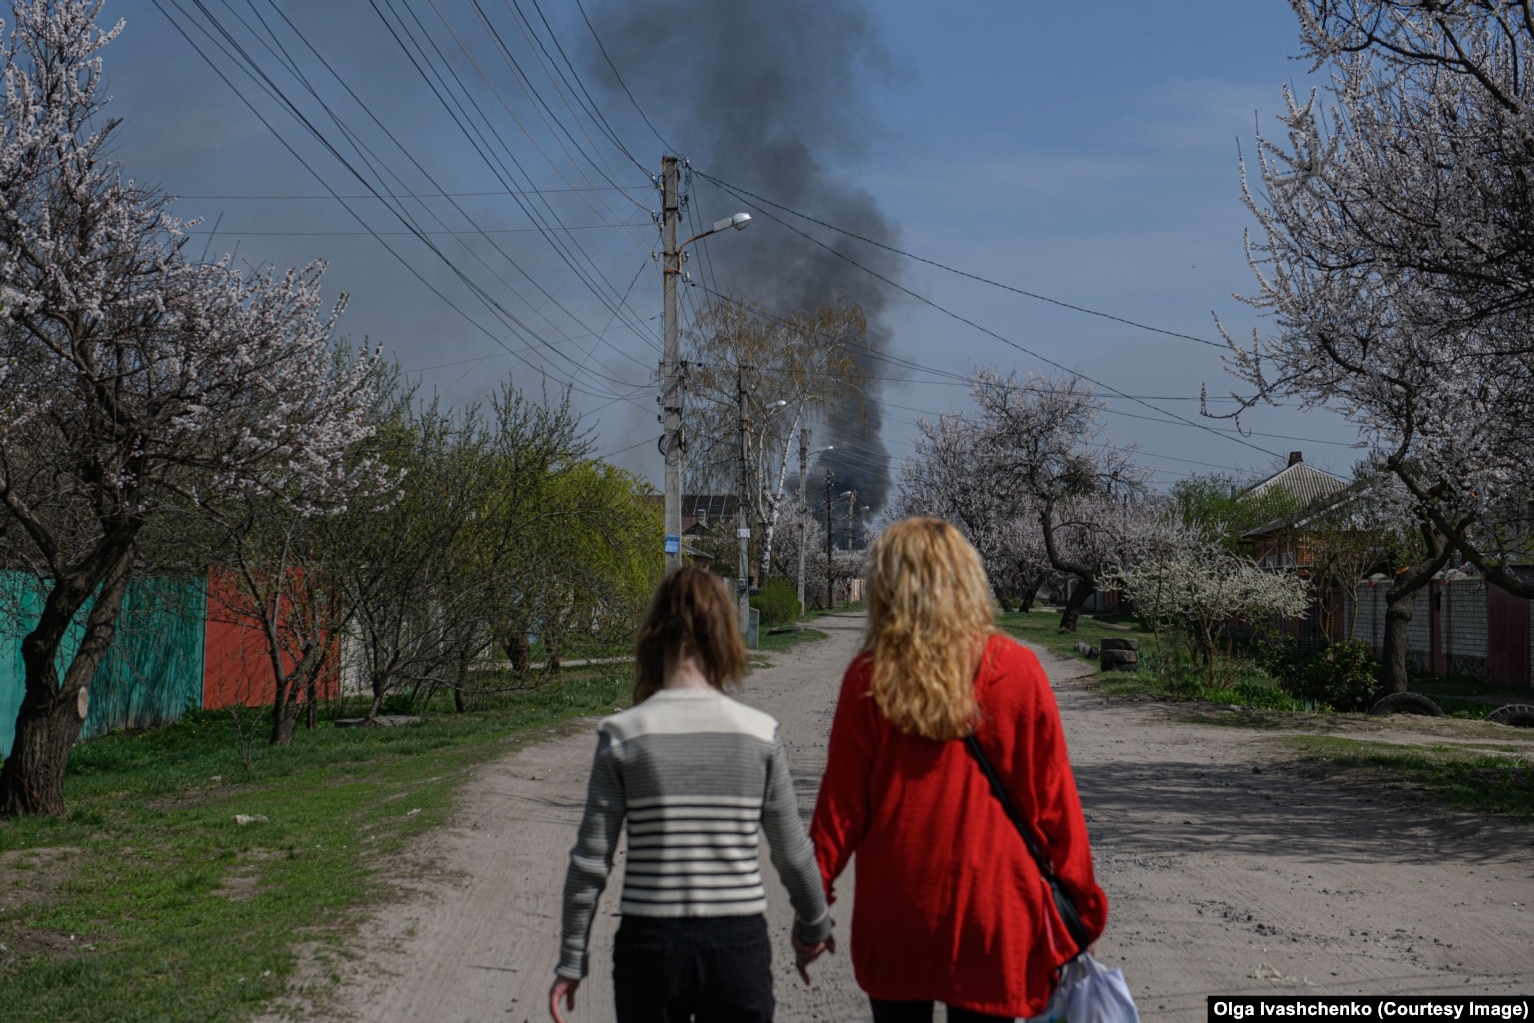 Një grua dhe një vajzë duke ecur nëpër një rrugë në periferi të Harkivit ndërsa para tyre shihet tymi që ngrihet në qiell nga një zjarr, më 9 prill.